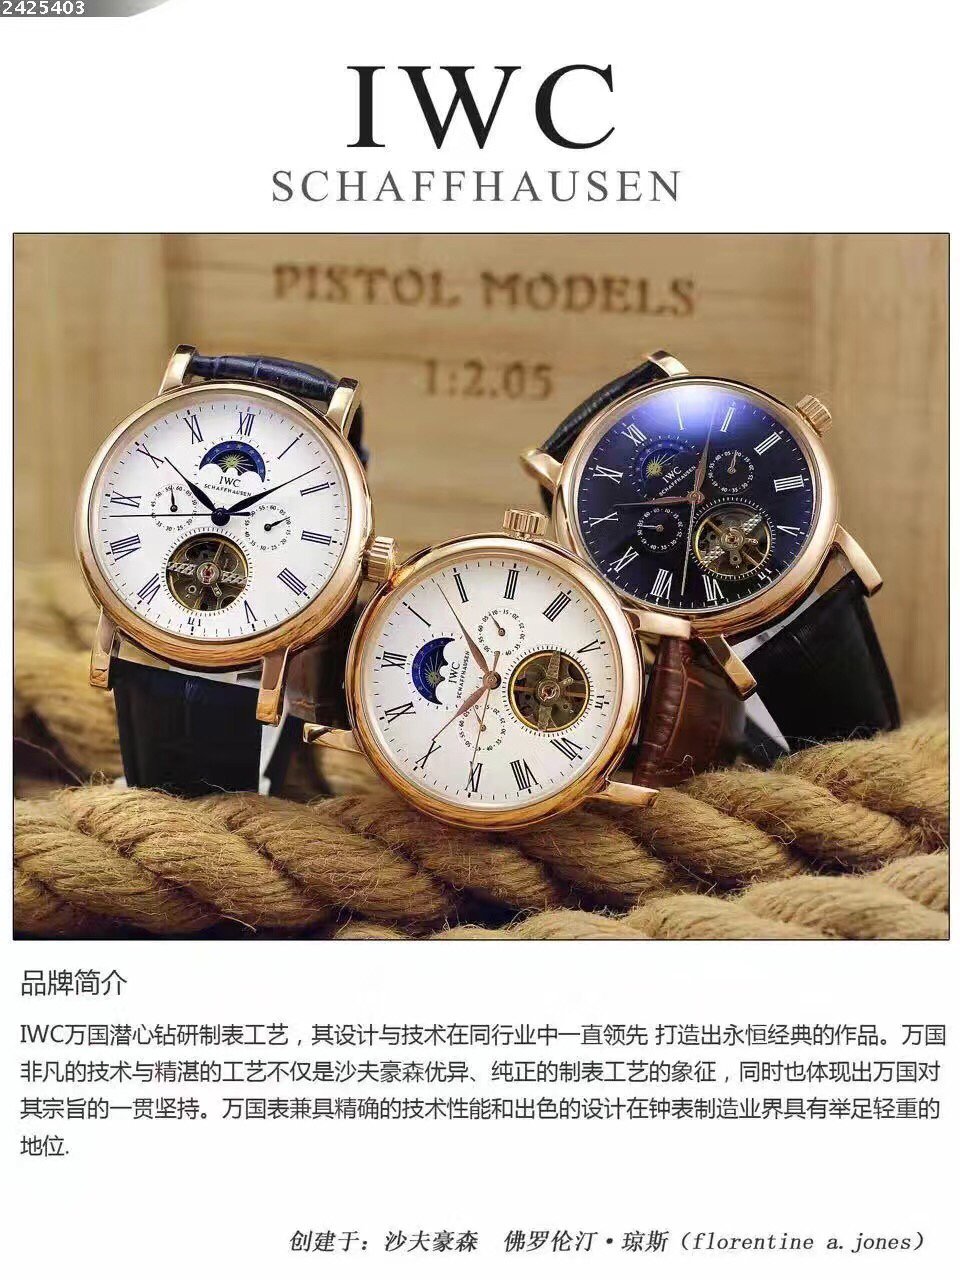 2425403 万国  波涛菲诺飞轮新款   推荐款手表